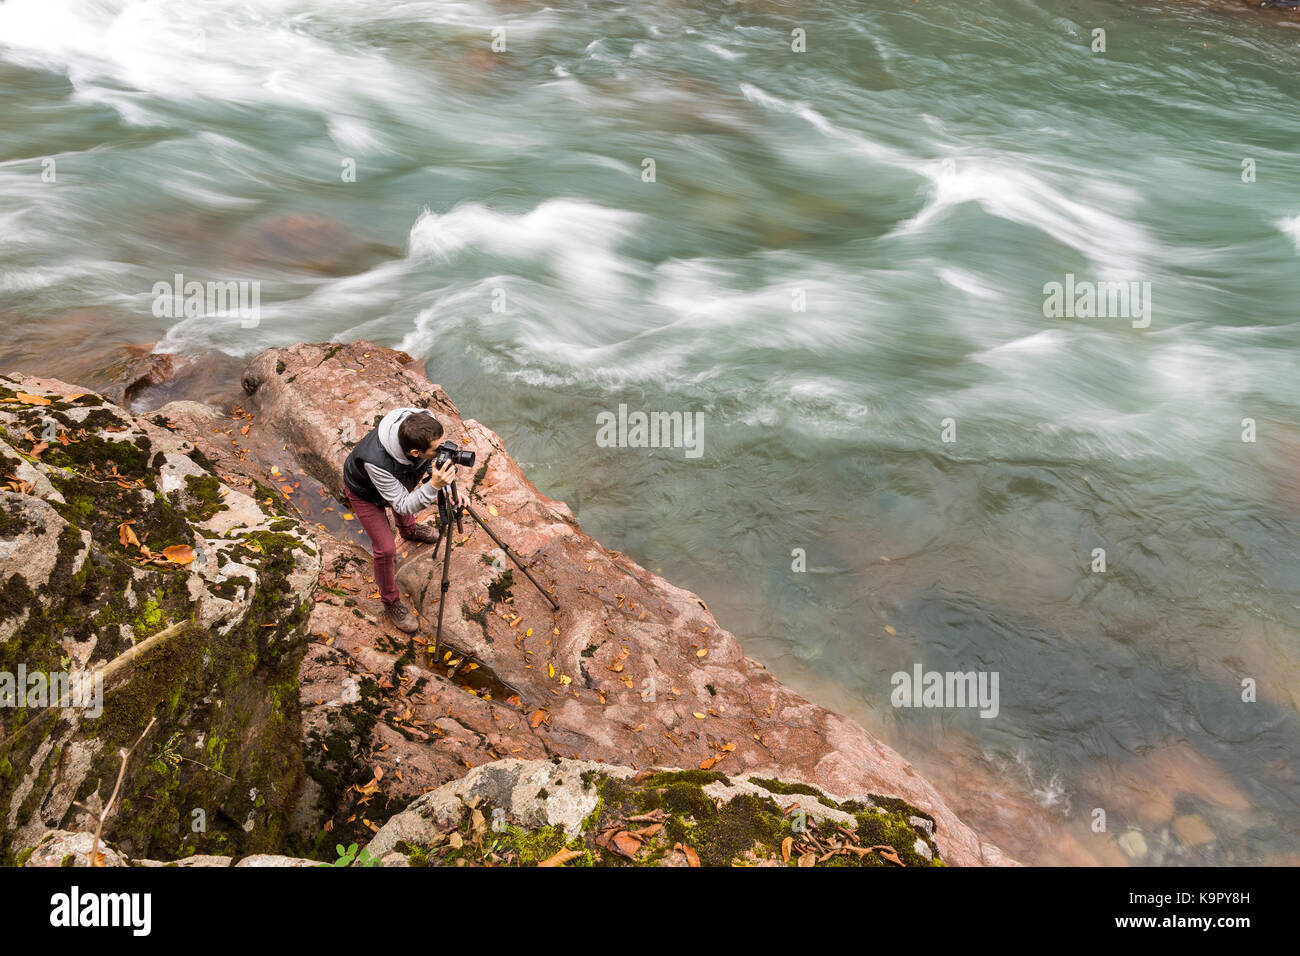 Hobby, hohe Qualifikation, Natur Konzept. professioneller Fotograf am Werk ist, stehend mit Stativ an der felsigen Küste in der Nähe von Fluss mit Kabbelwasser, fließt sehr schnell Stockfoto